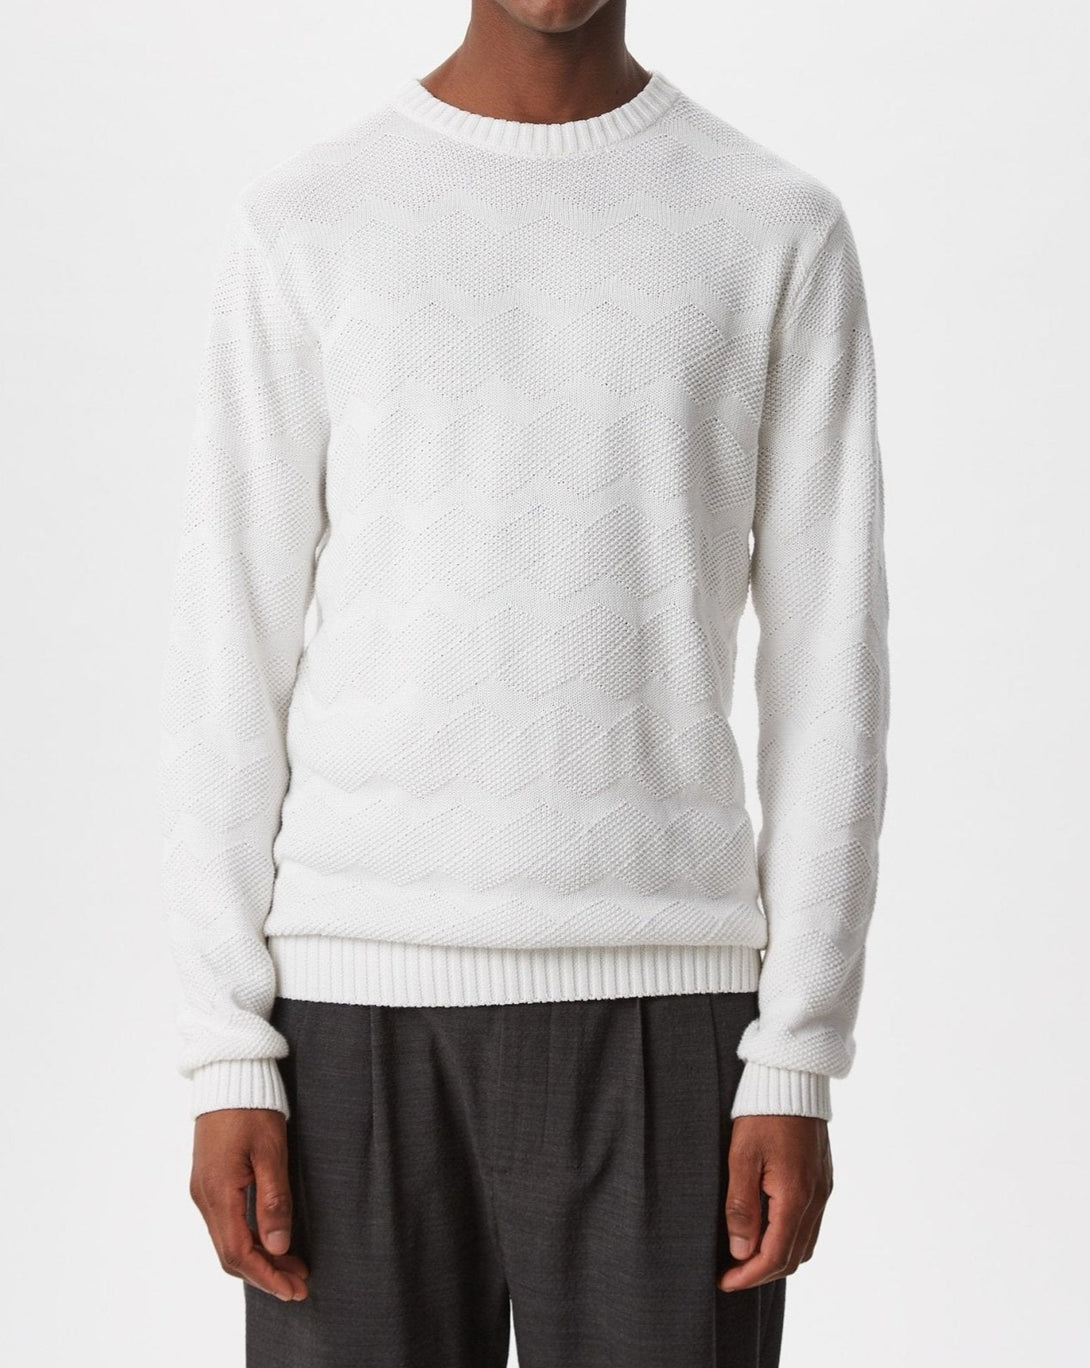 Men Jersey | White Organic Cotton Textured Sweater by Spanish designer Adolfo Dominguez